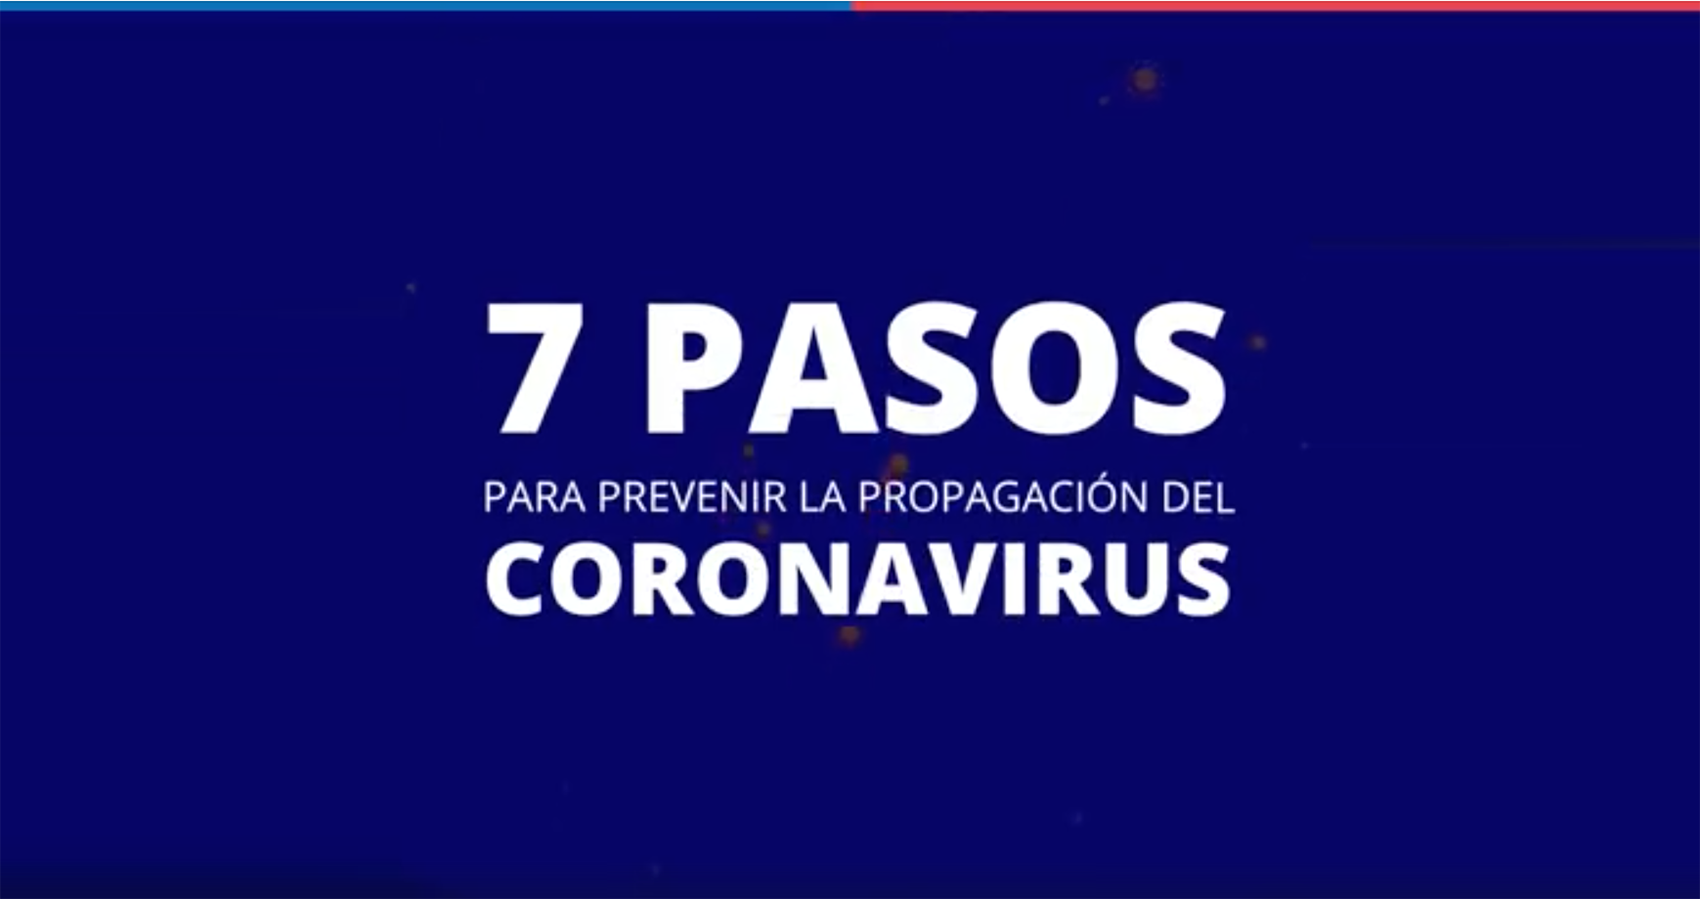 7 Pasos para prevenir la propagación del coronavirus